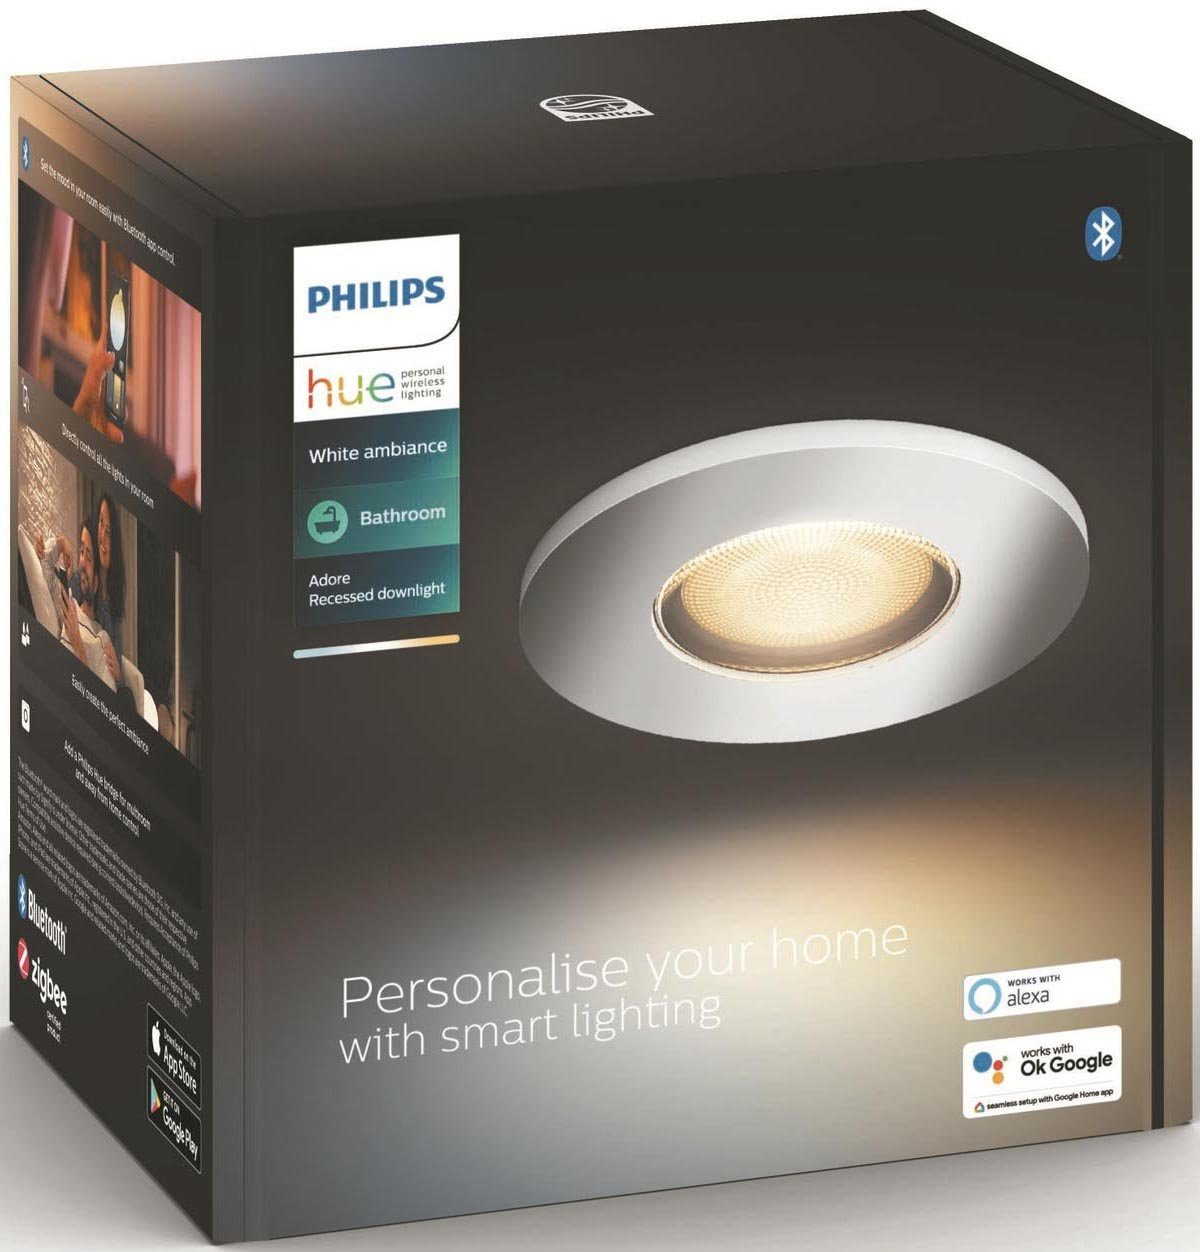 Philips Leuchtmittel Dimmfunktion, Adore, Warmweiß wechselbar, LED Flutlichtstrahler Hue